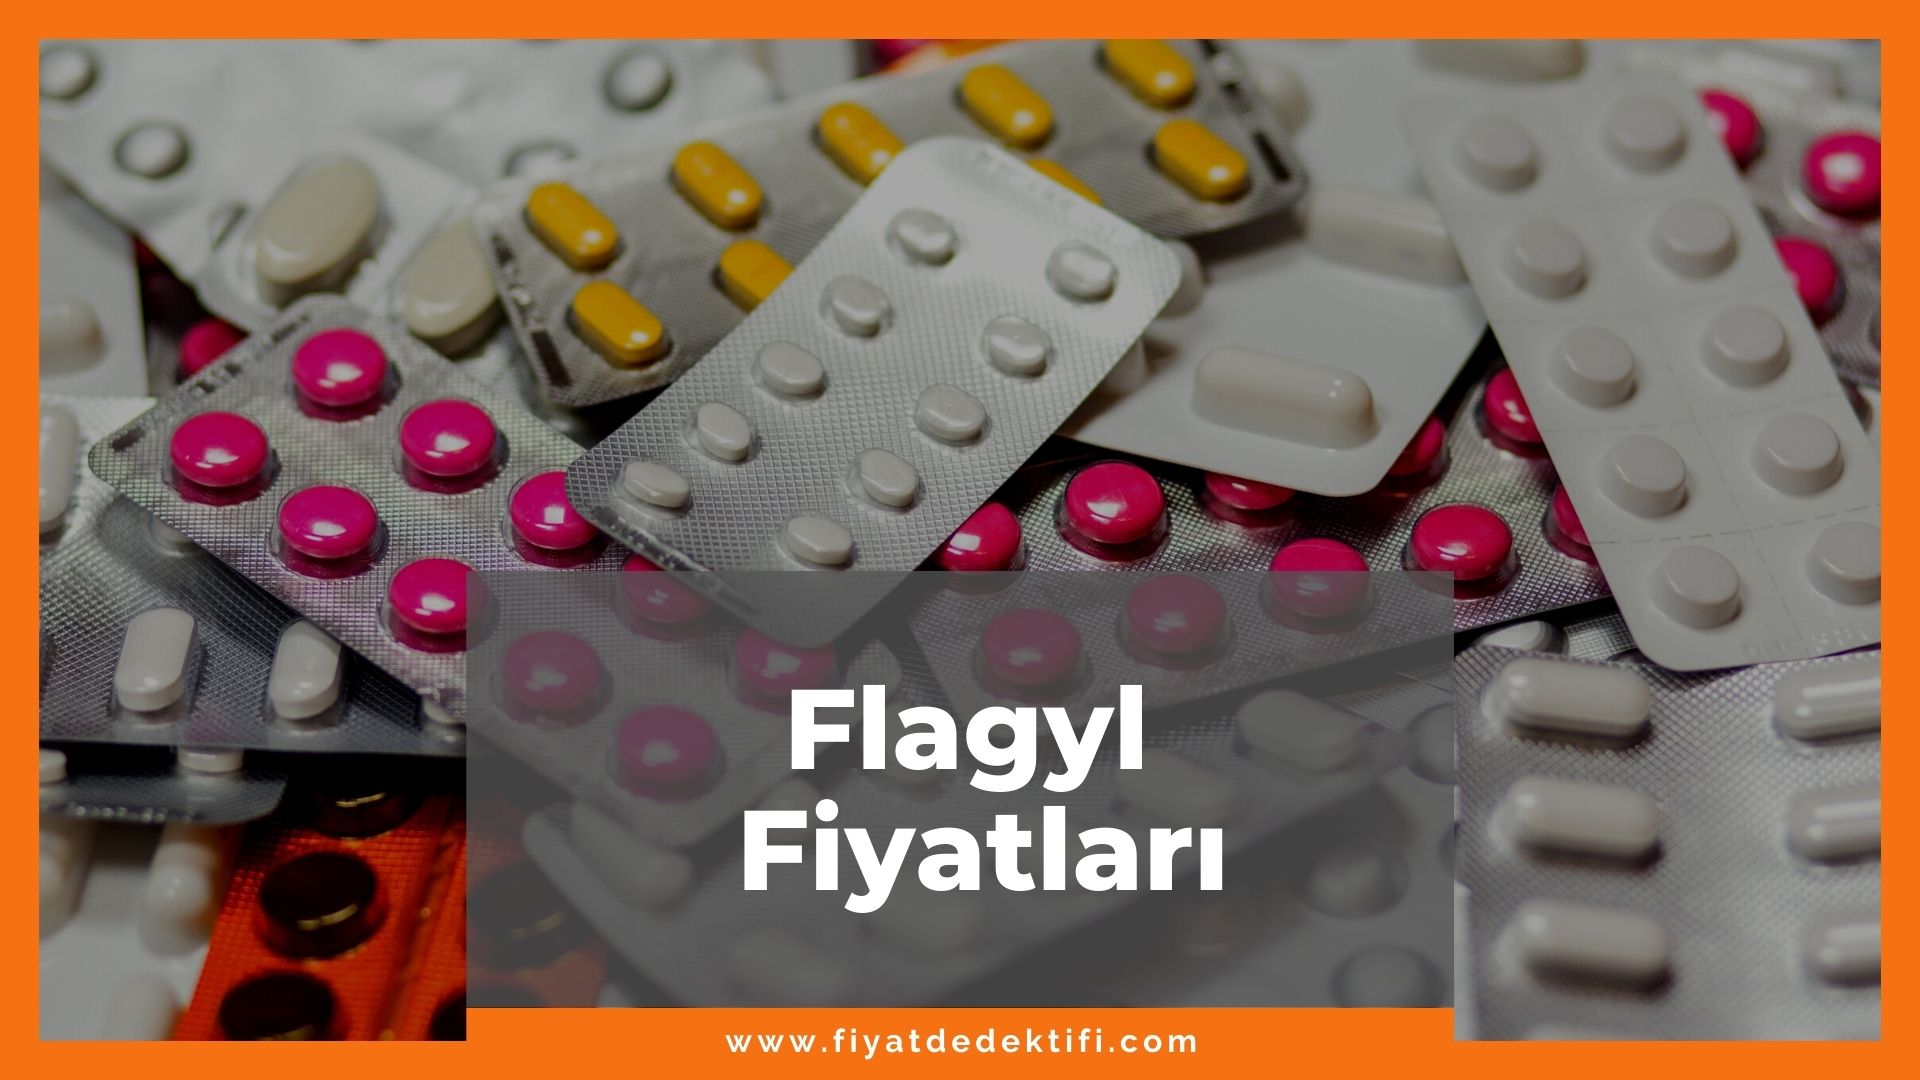 Flagyl Fiyat 2021, Flagyl 500 mg Tablet Fiyatı, Flagyl Şurup Fiyatı, flagyl zamlandı mı, flagyl zamlı fiyatı ne kadar kaç tl oldu